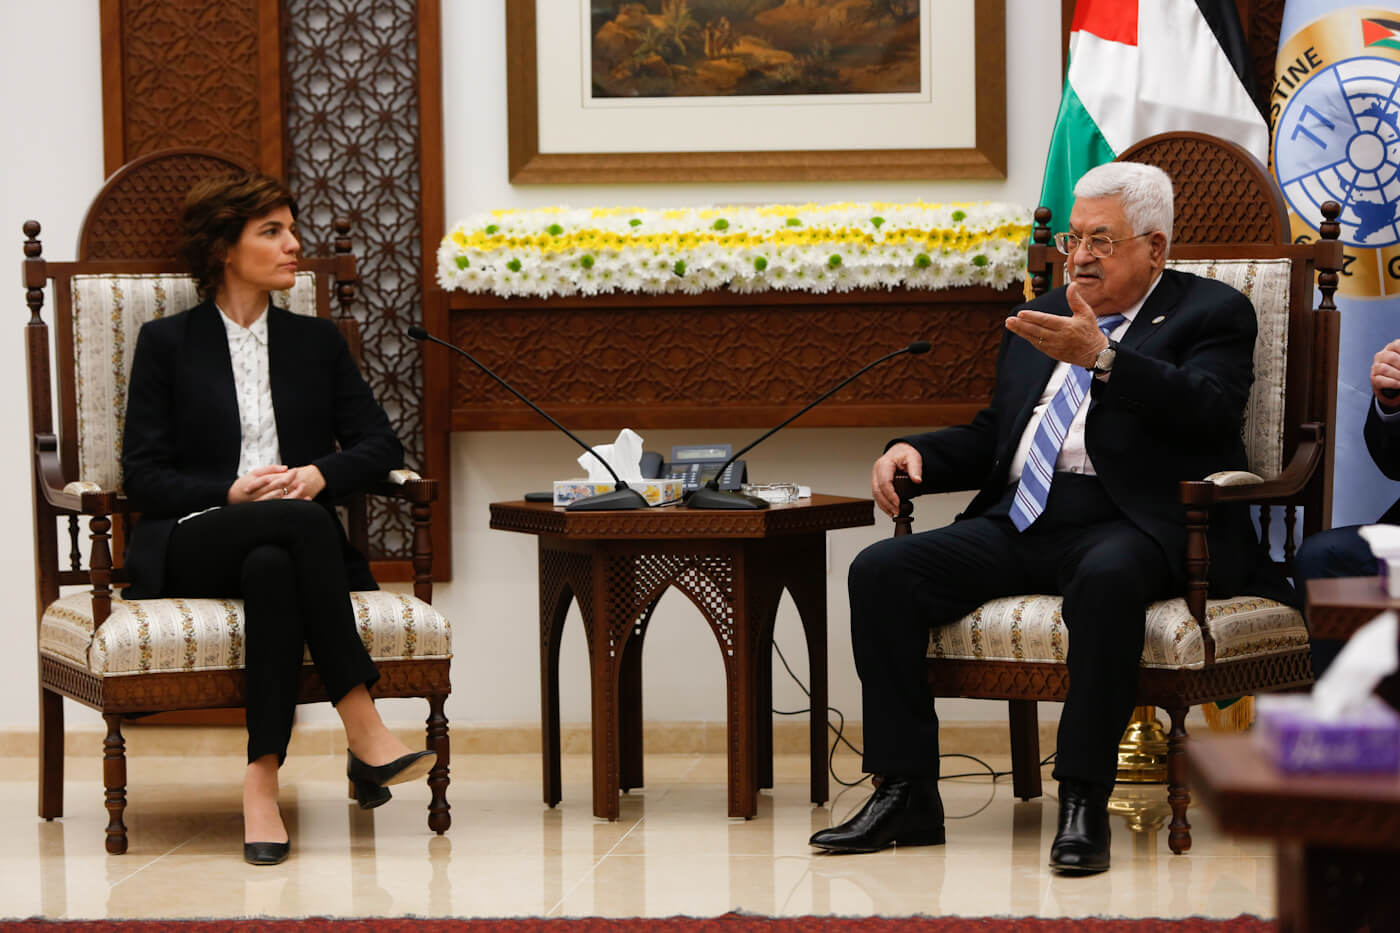 Mahmoud Abbas | Meretz派对